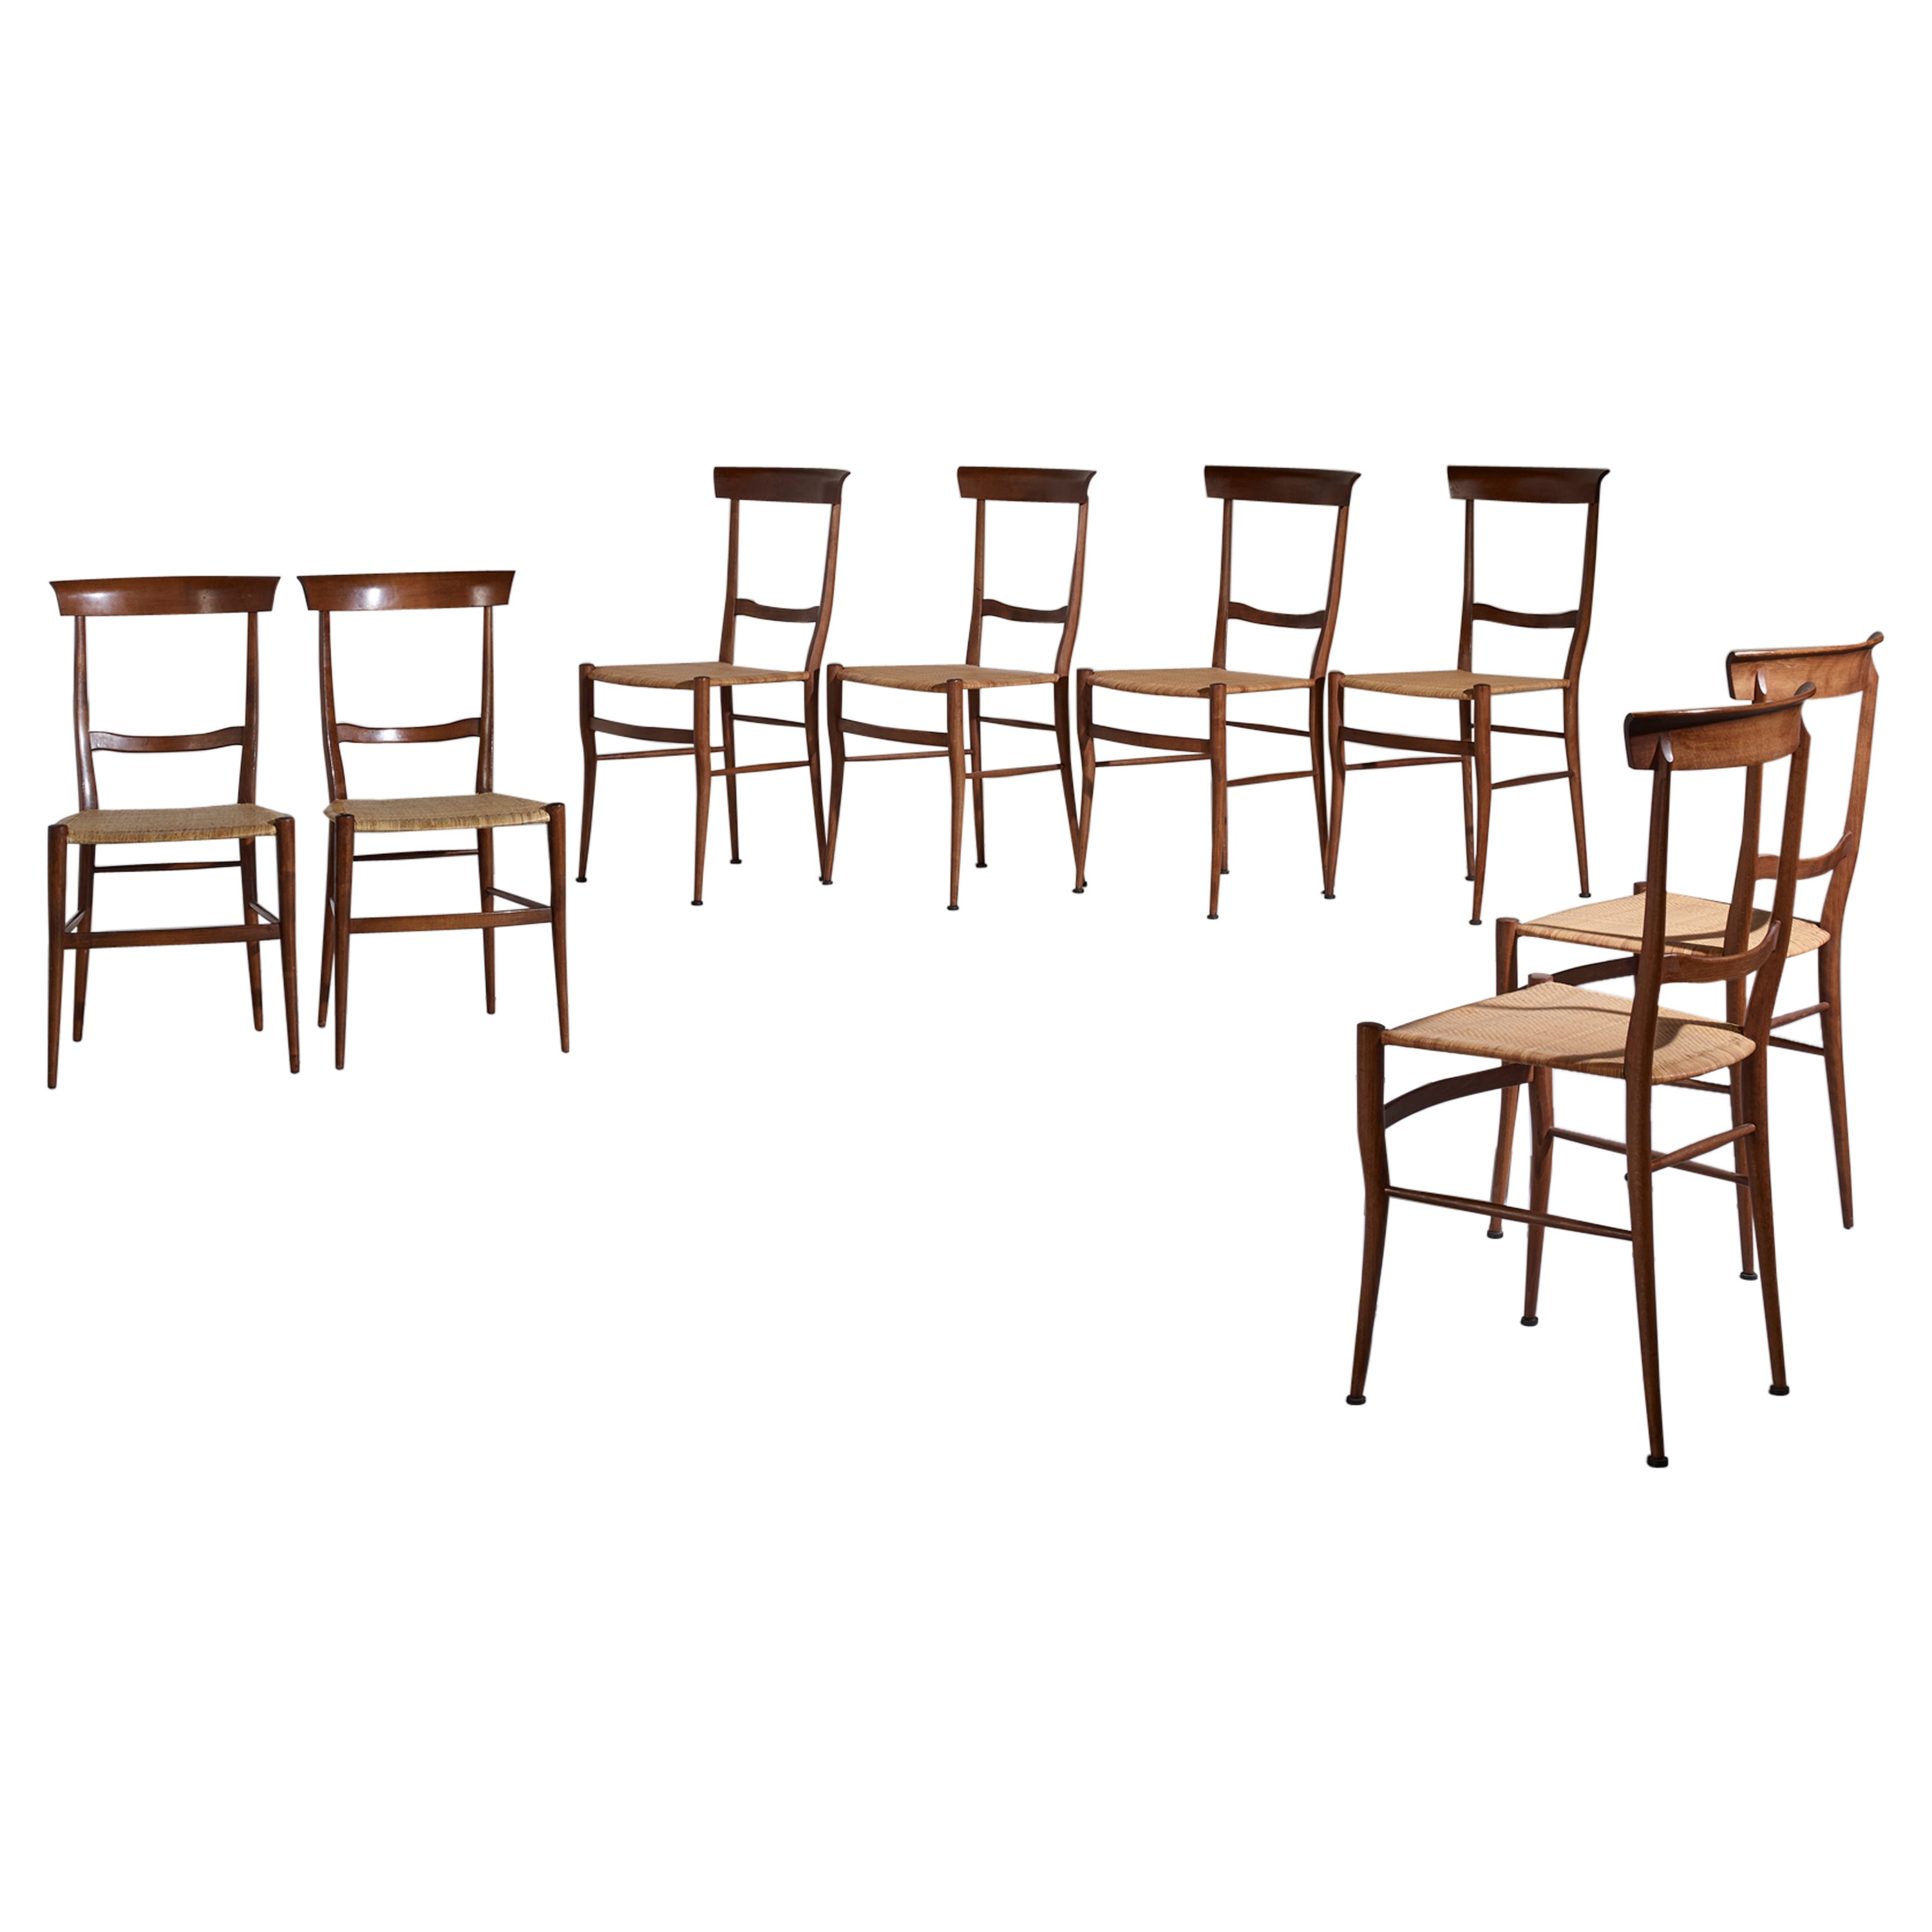 Emanuele Rambaldi, set of 8 'Ramba' dining chairs by Sanguineti Chiavari 1951